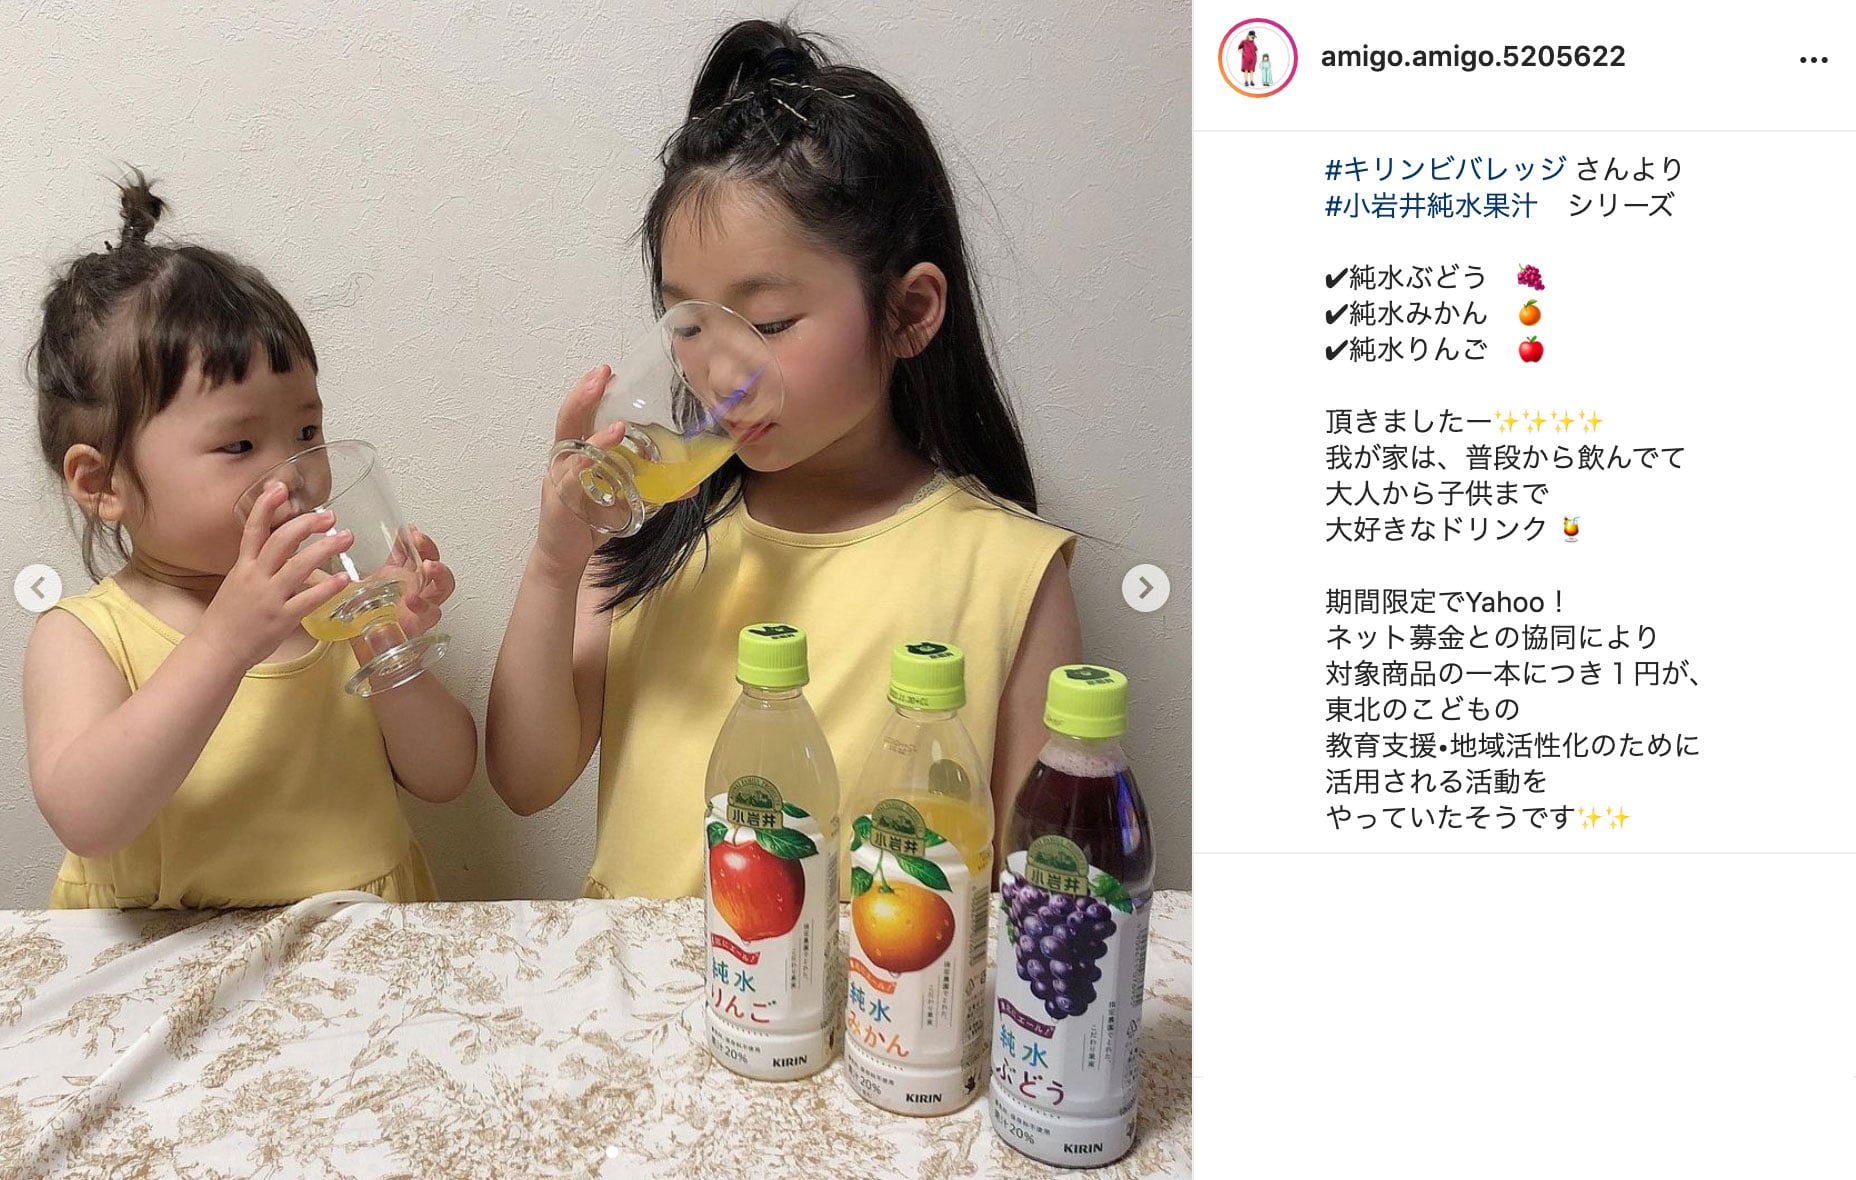 キリン 小岩井 純水果汁シリーズ 詰め合わせセット 430mlペットボトル×24(3種×8)本入